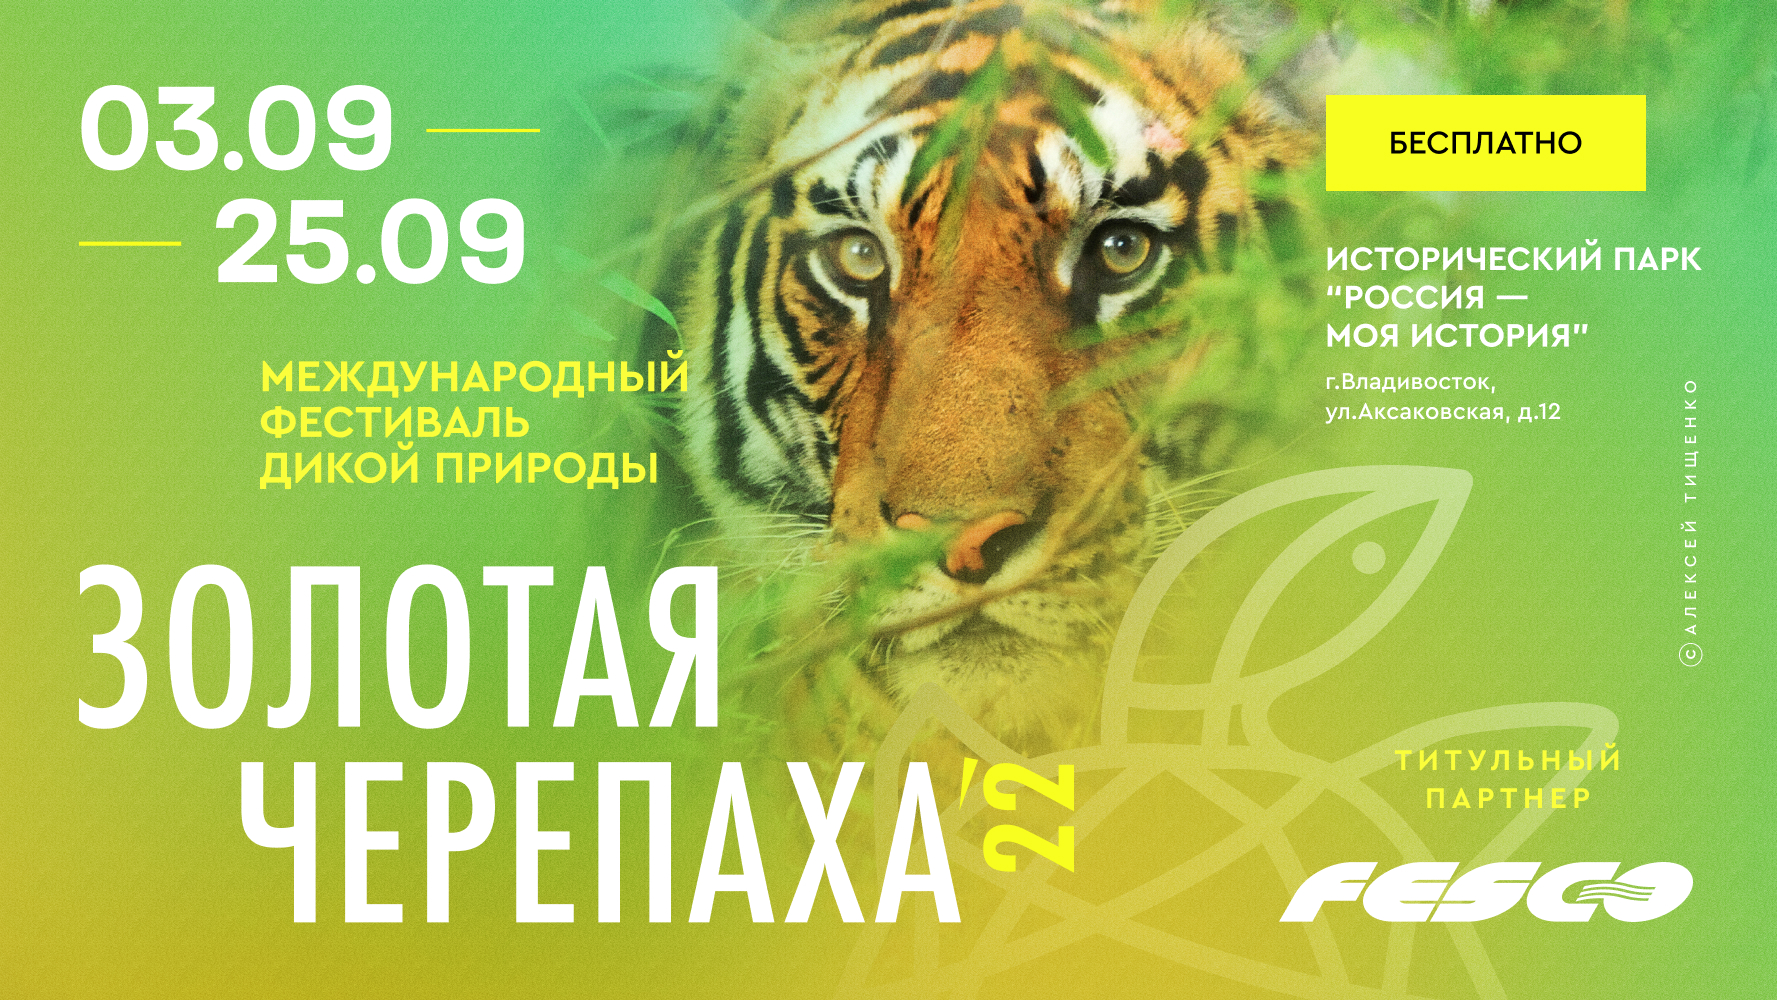 FESCO выступила спонсором фестиваля дикой природы «Золотая Черепаха» во Владивостоке